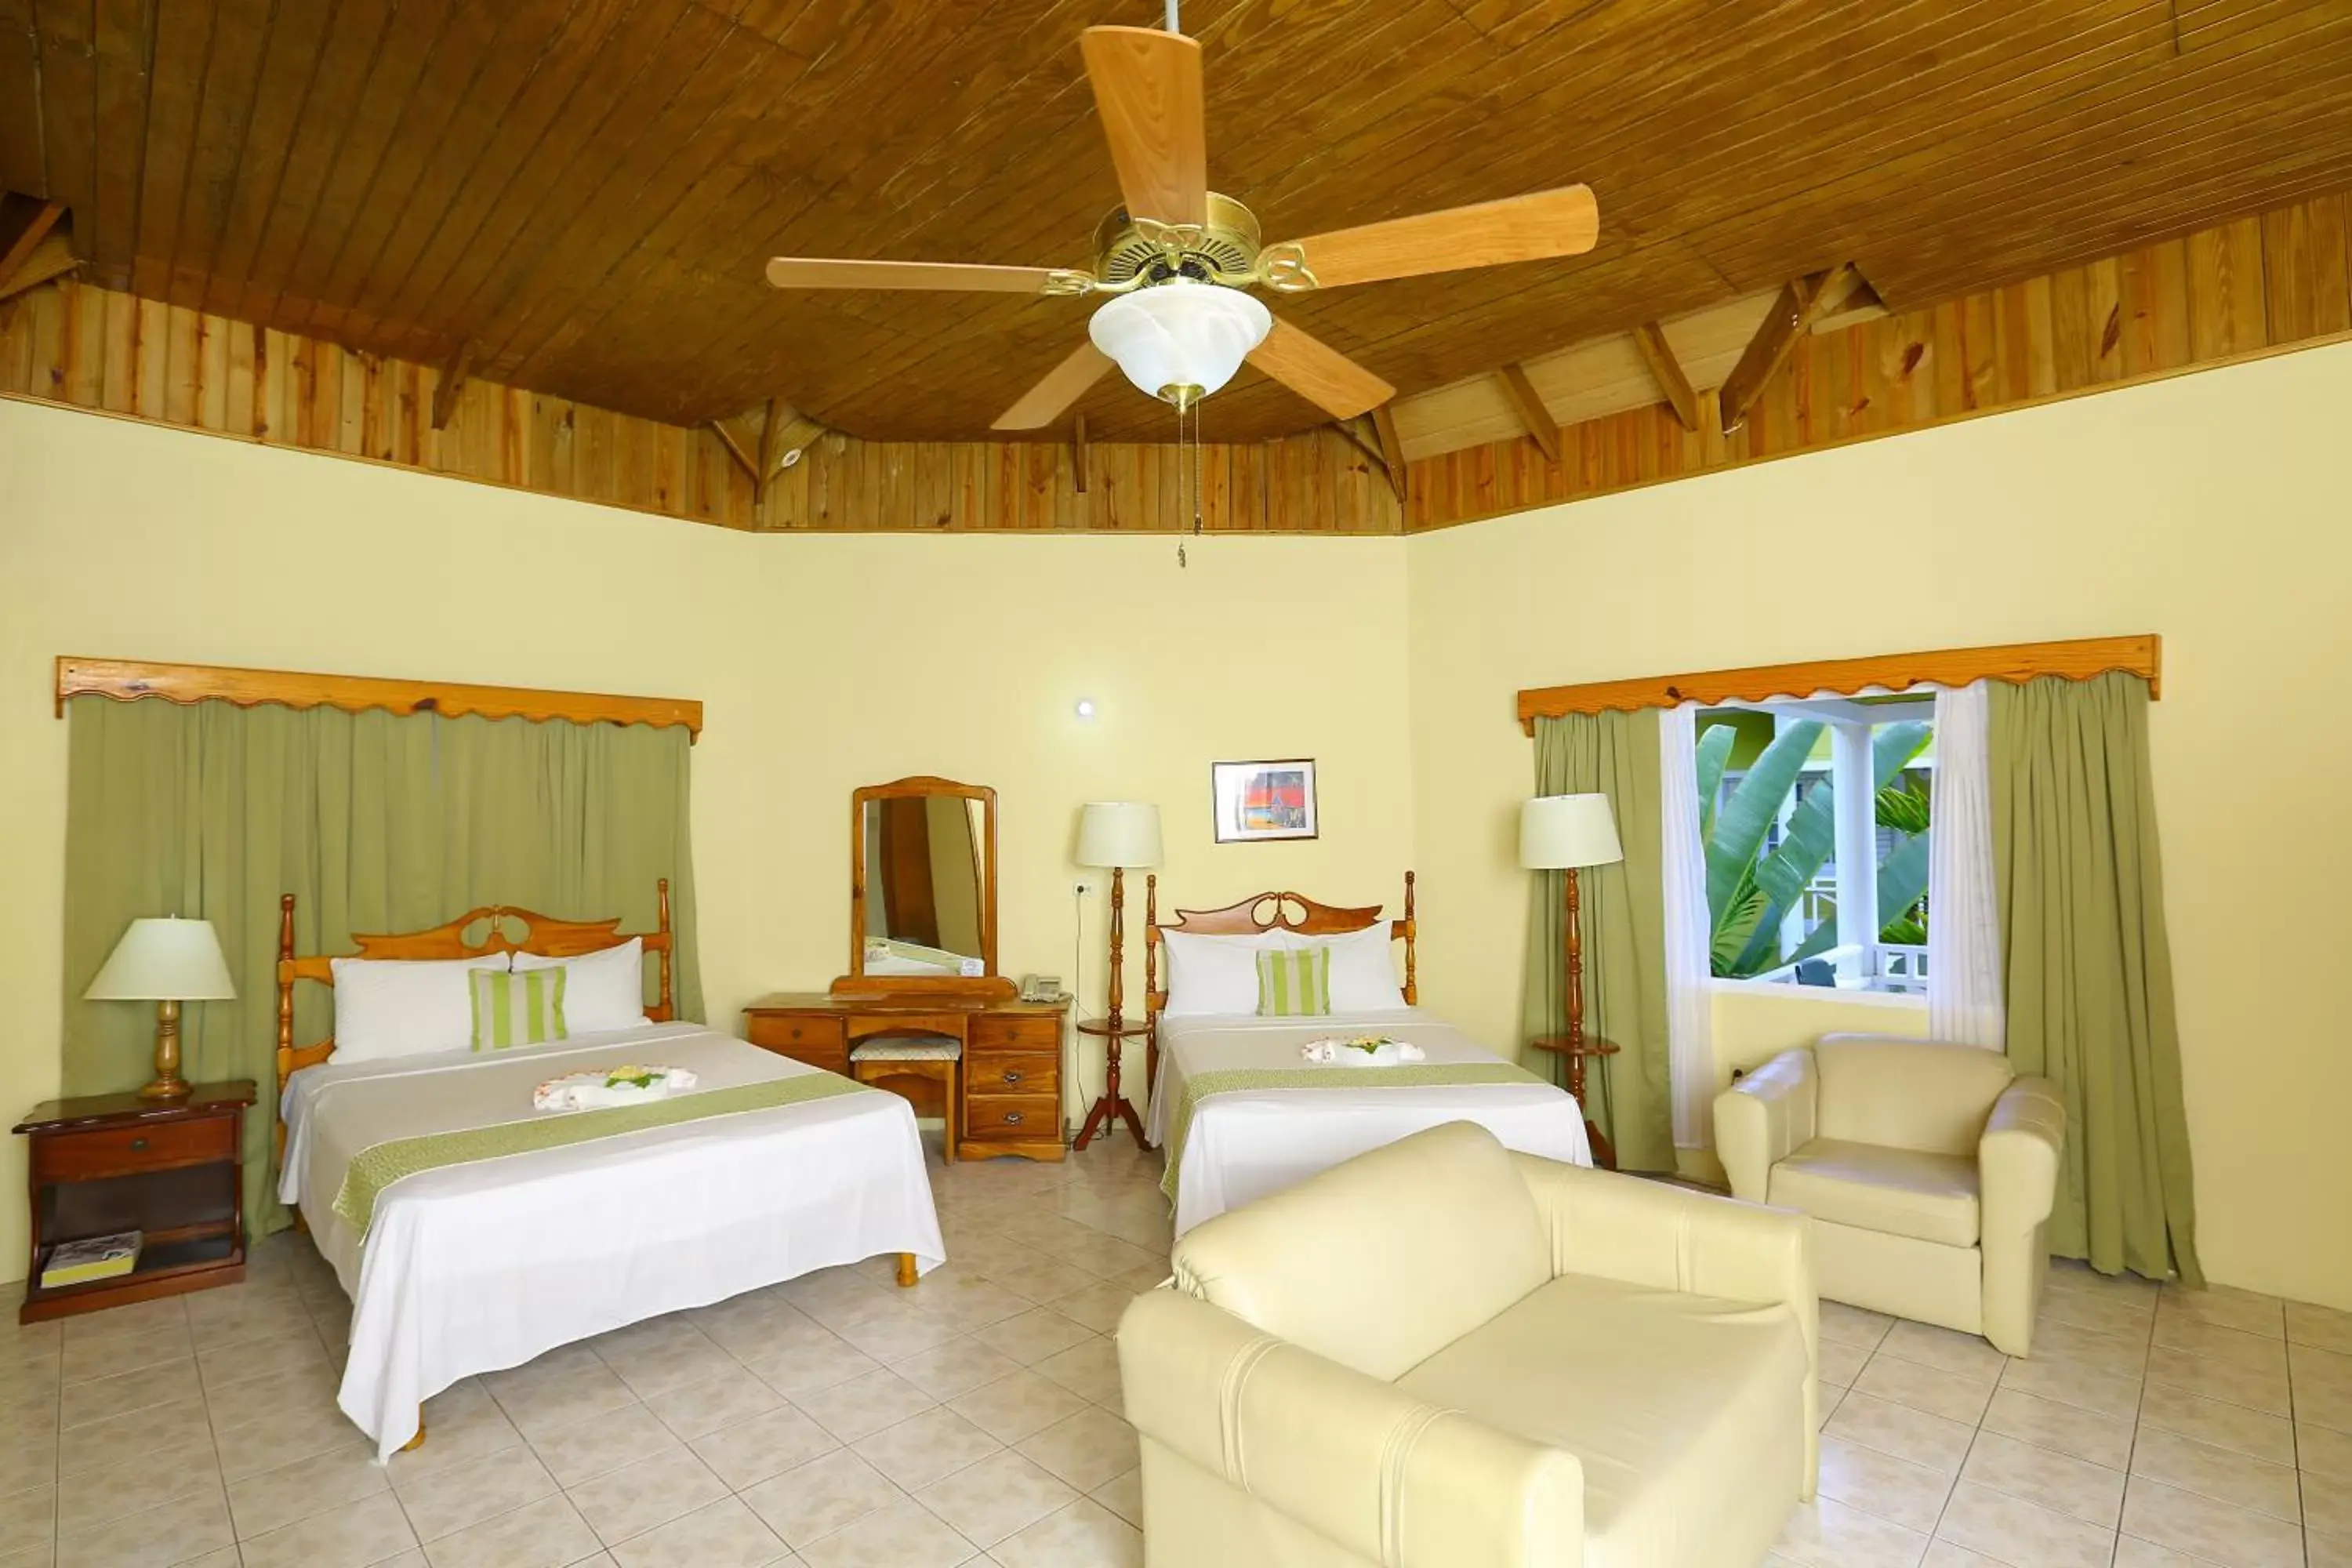 Bedroom in Merrils Beach Resort II